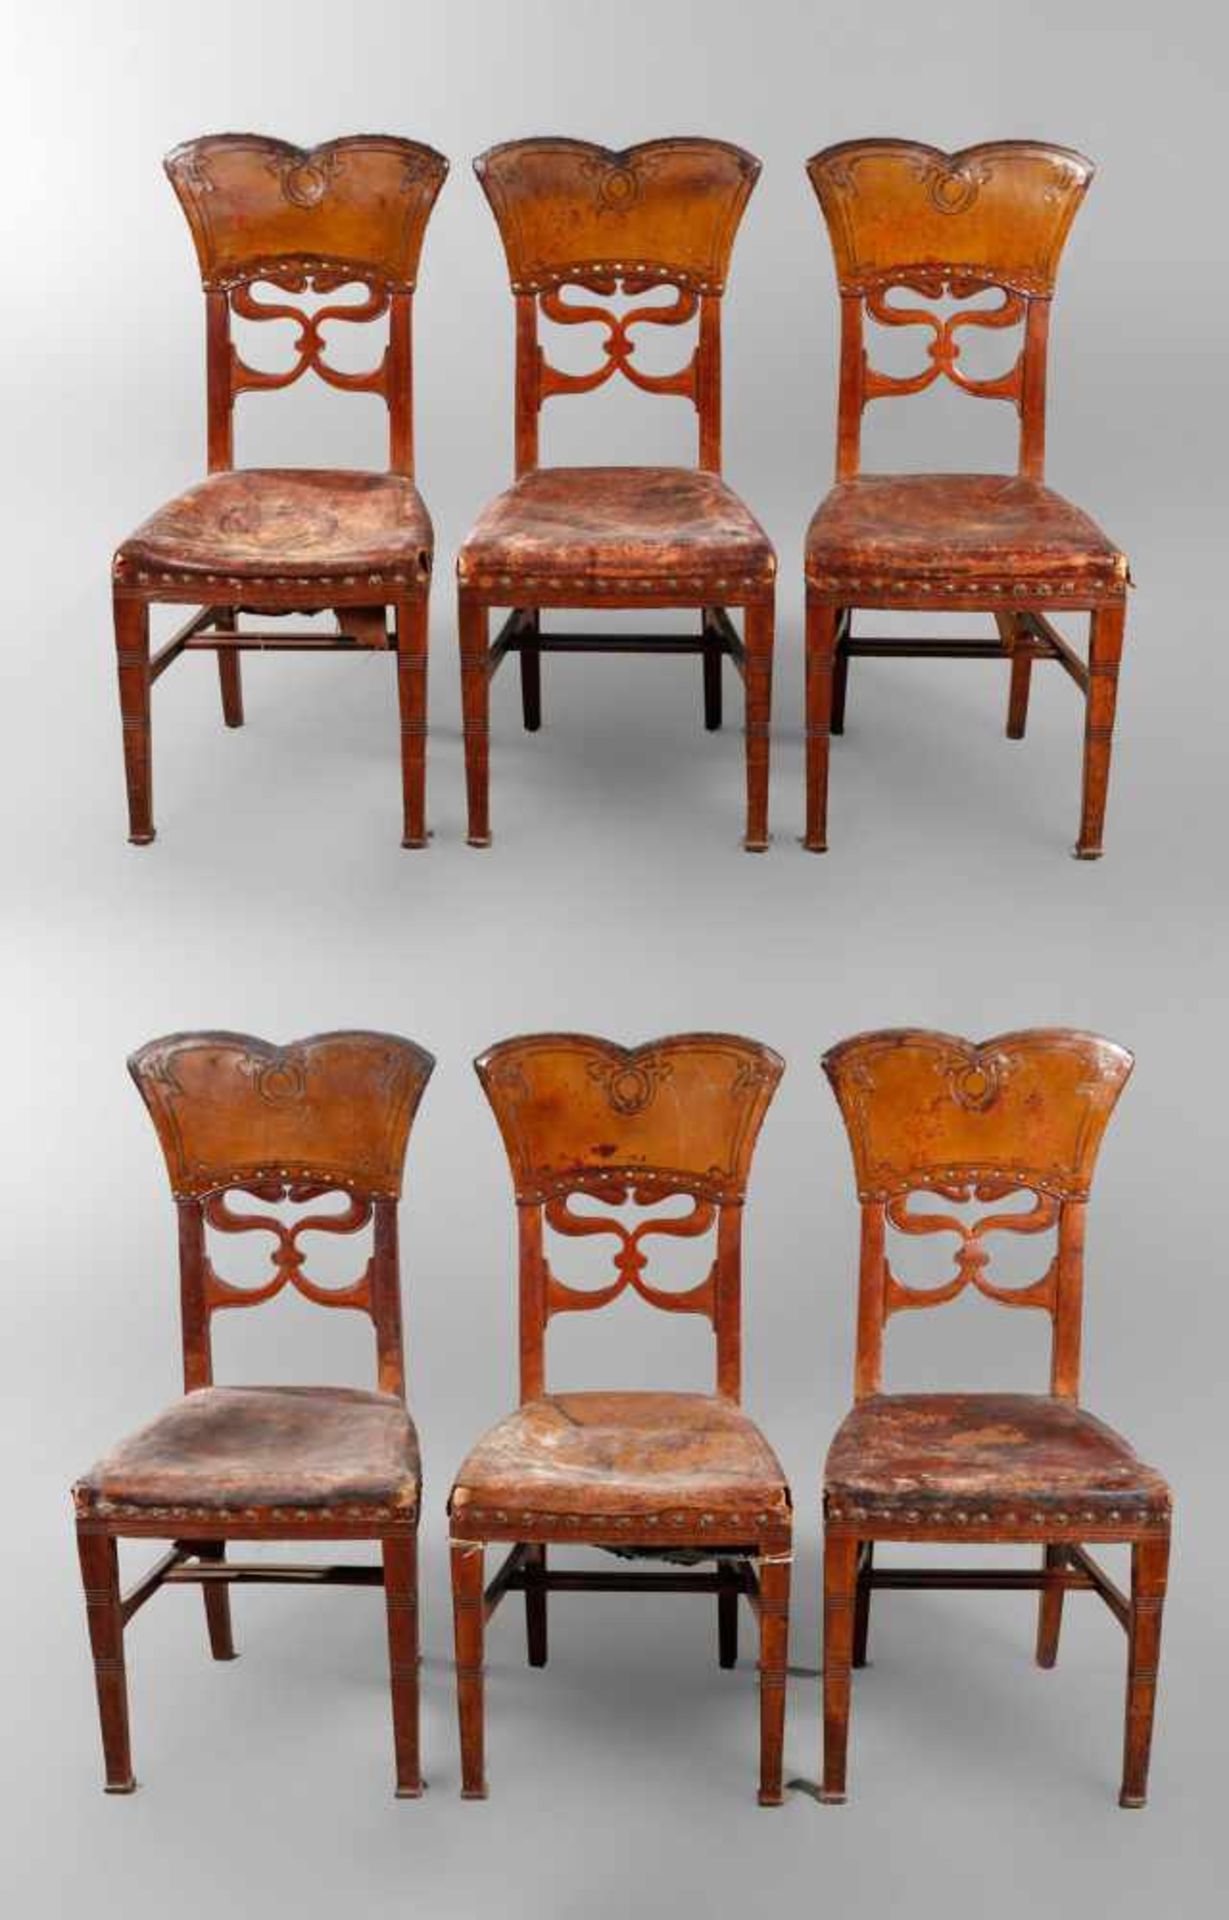 Sechs Stühle Jugendstil wohl Frankreich um 1900, Nussbaum massiv, mit originalen Lederbezügen, diese